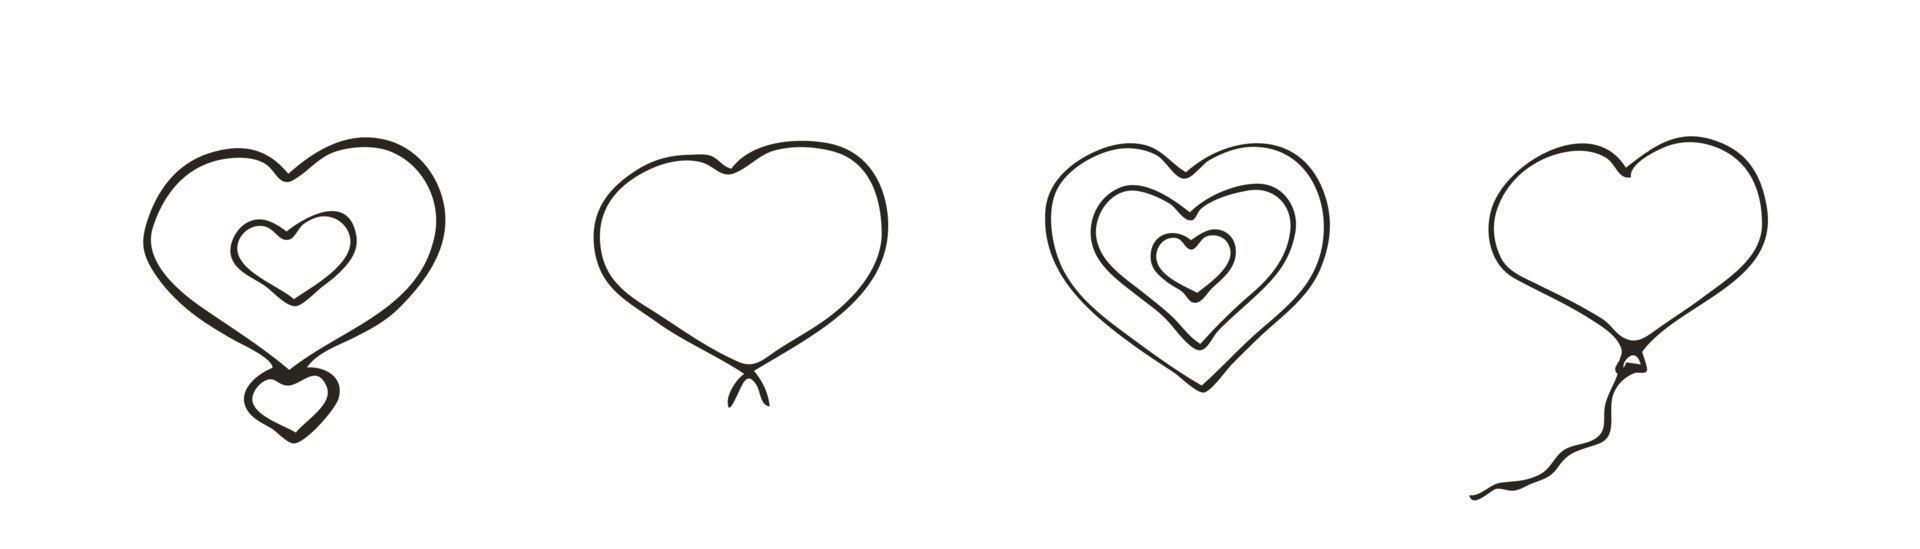 ensemble d'icône de coeur de doodle. symbole de l'amour. illustration graphique de vecteur dessiné main mignon isolé sur fond blanc. signe de style de contour simple. modèle de croquis d'art